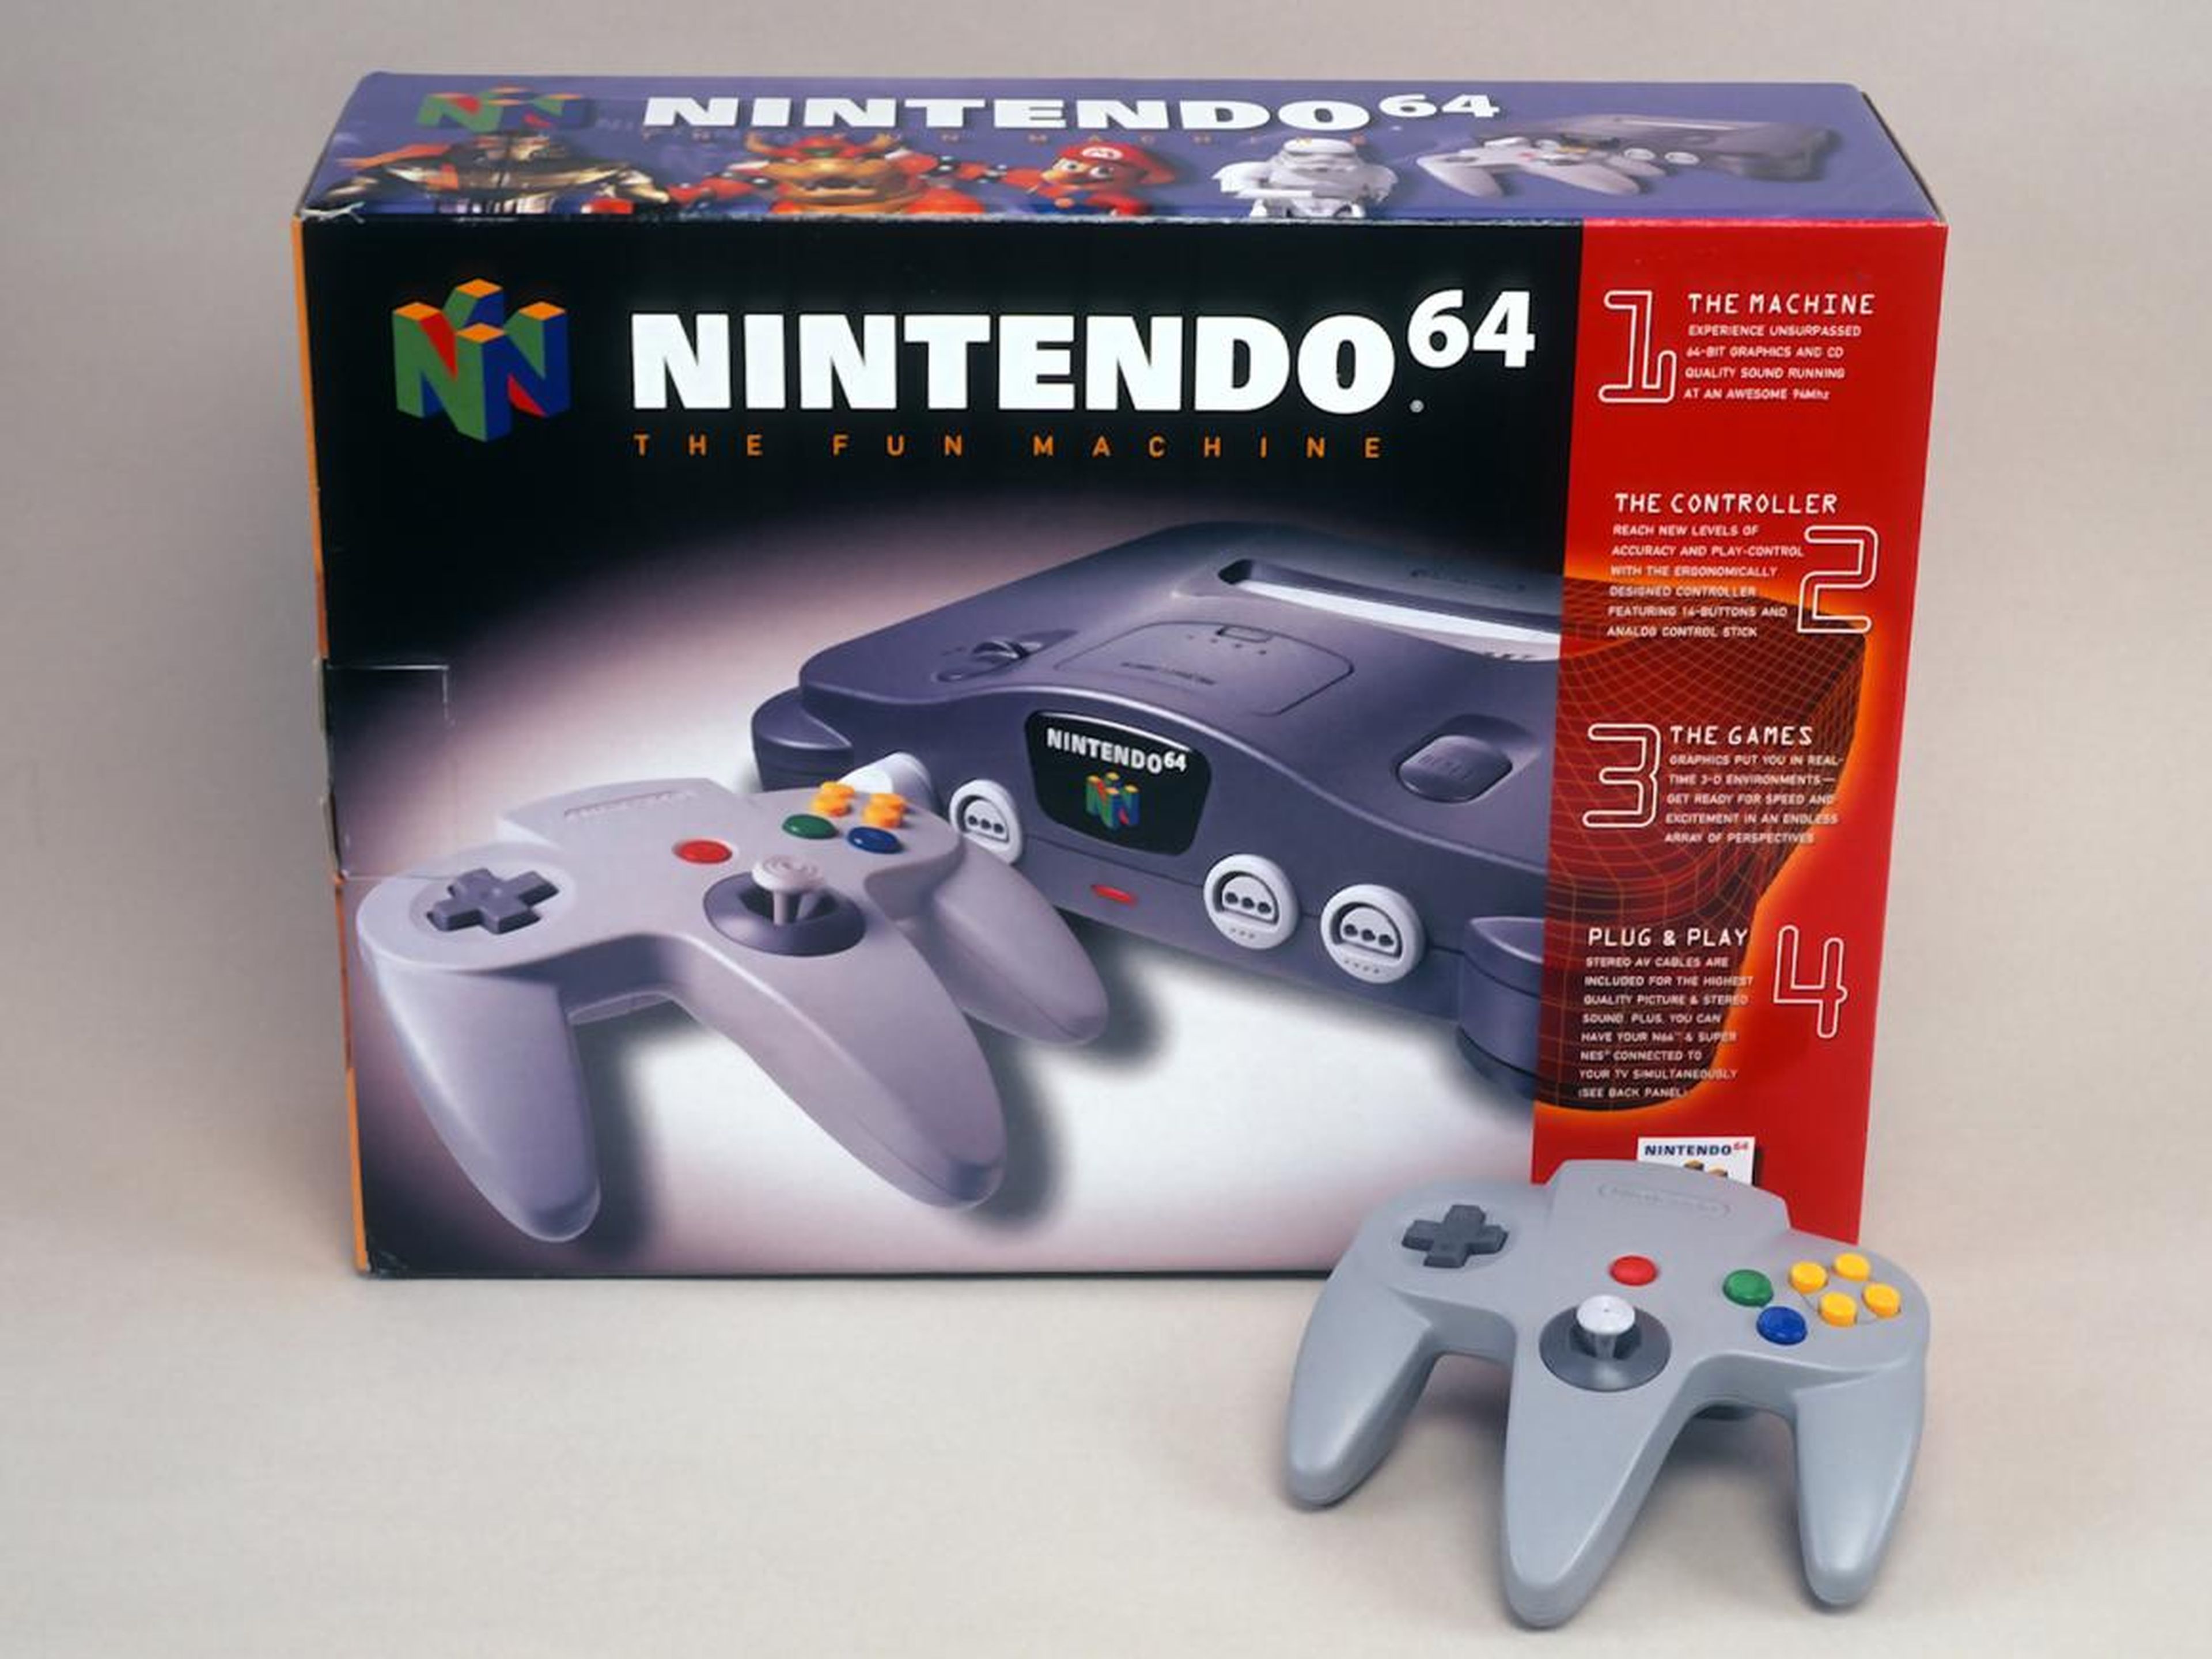 El primer día del lanzamiento de Nintendo 64 en Japón en 1996, se vendieron más de 500.000 consolas. En septiembre de ese año también se vendía en Estados Unidos y al final consiguieron vender 1,7 millones unidades en unos meses.